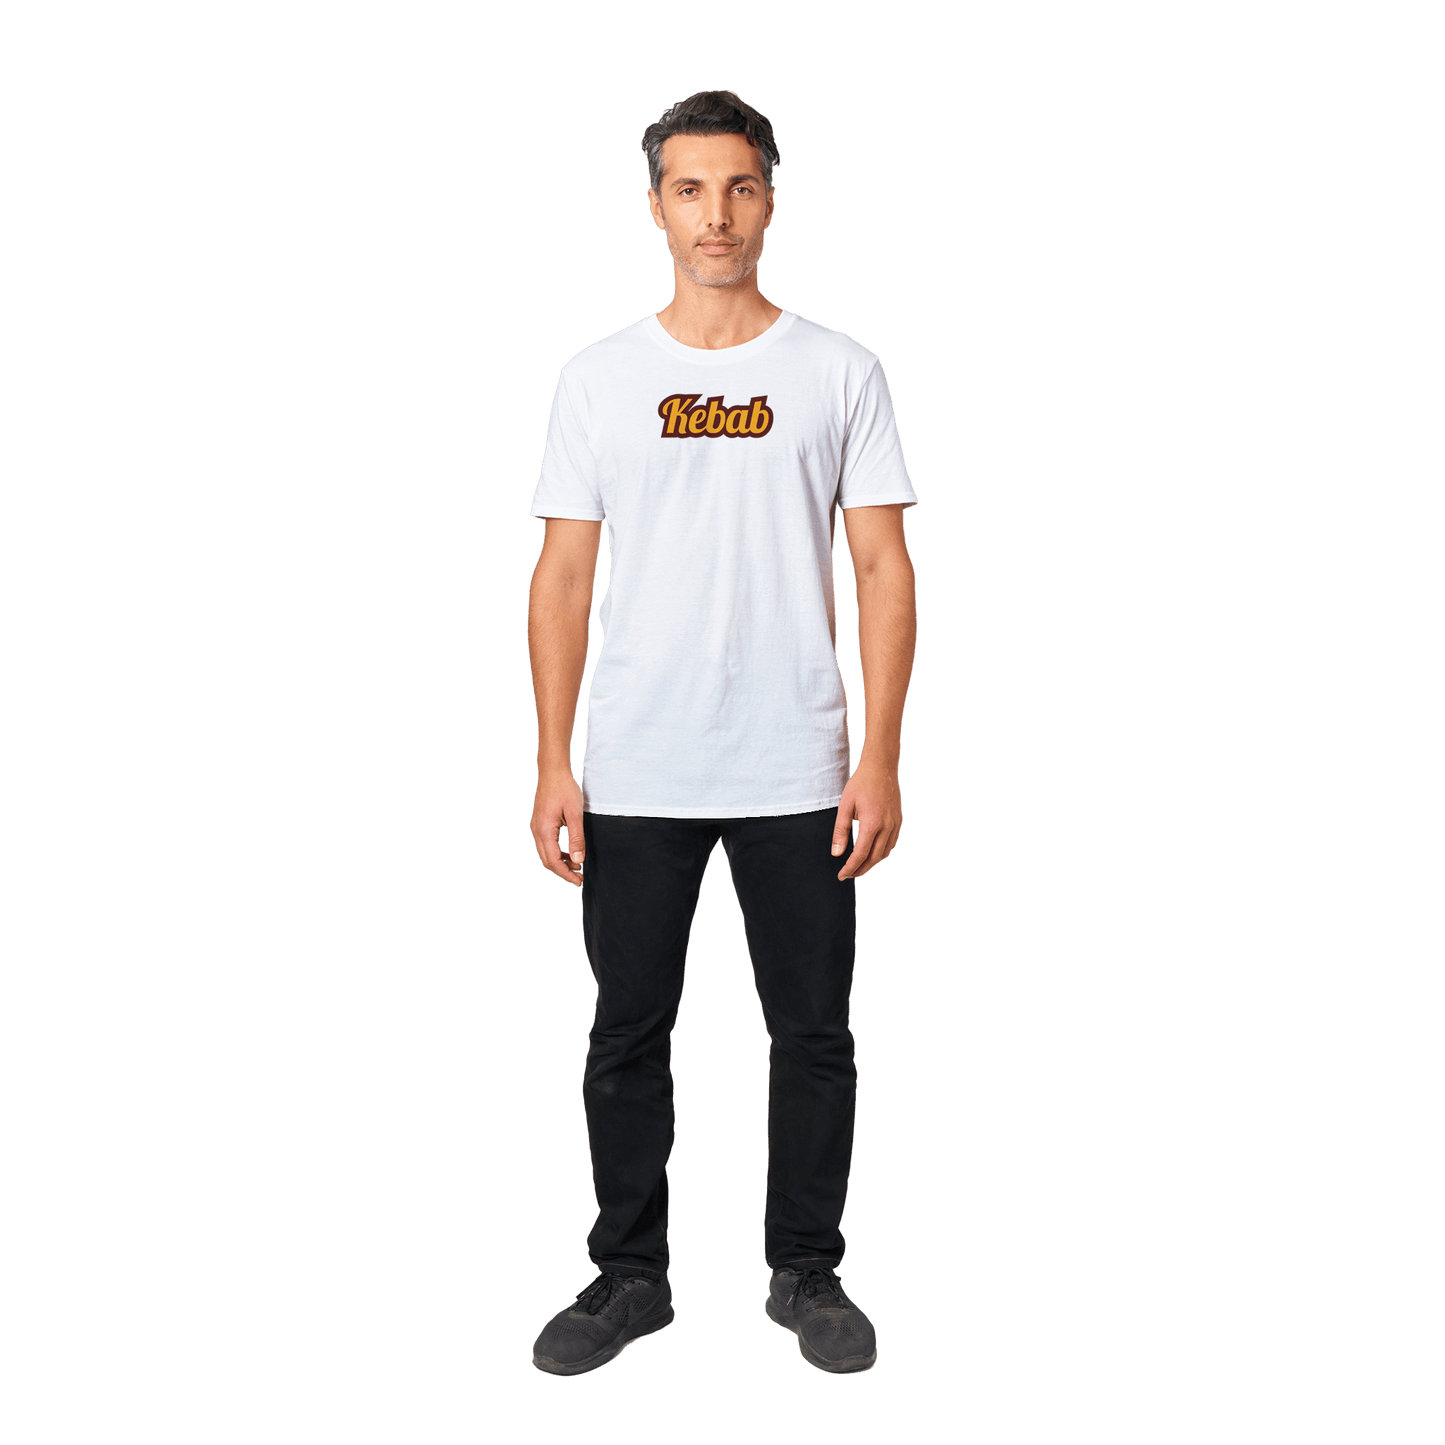 Kebab - T-shirt 